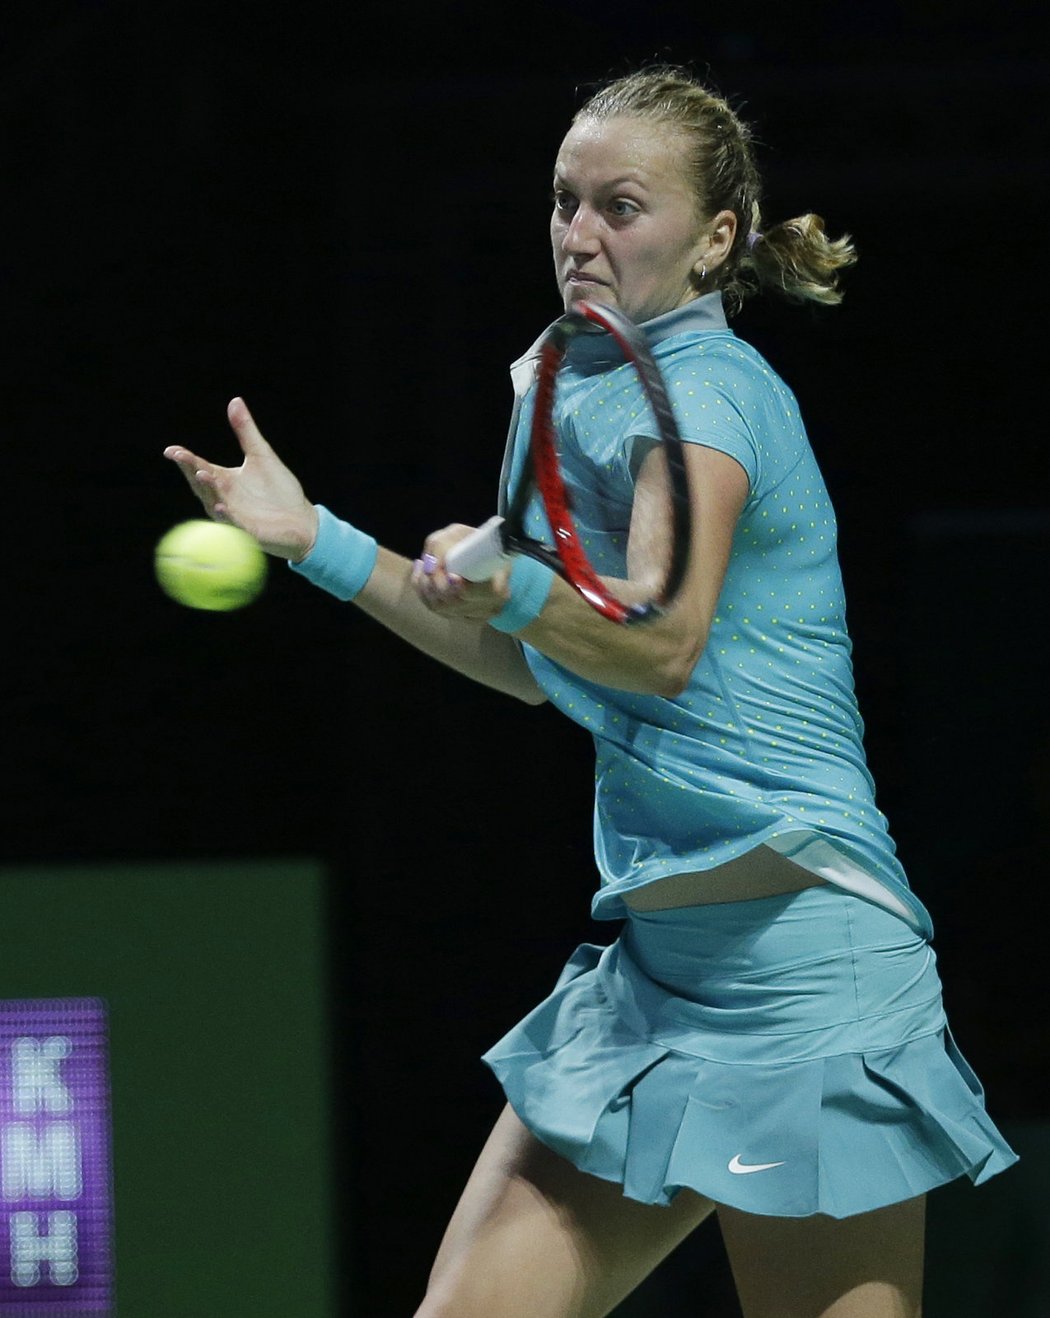 Petra Kvitová podlehla ve svém úvodním vystoupení na Turnaji mistryň Polce Radwaňské ve dvou setech. V Bílé skupině, kde hraje i česká tenistka, porazila v úvodním zápase Wozniacká Šarapovovou.